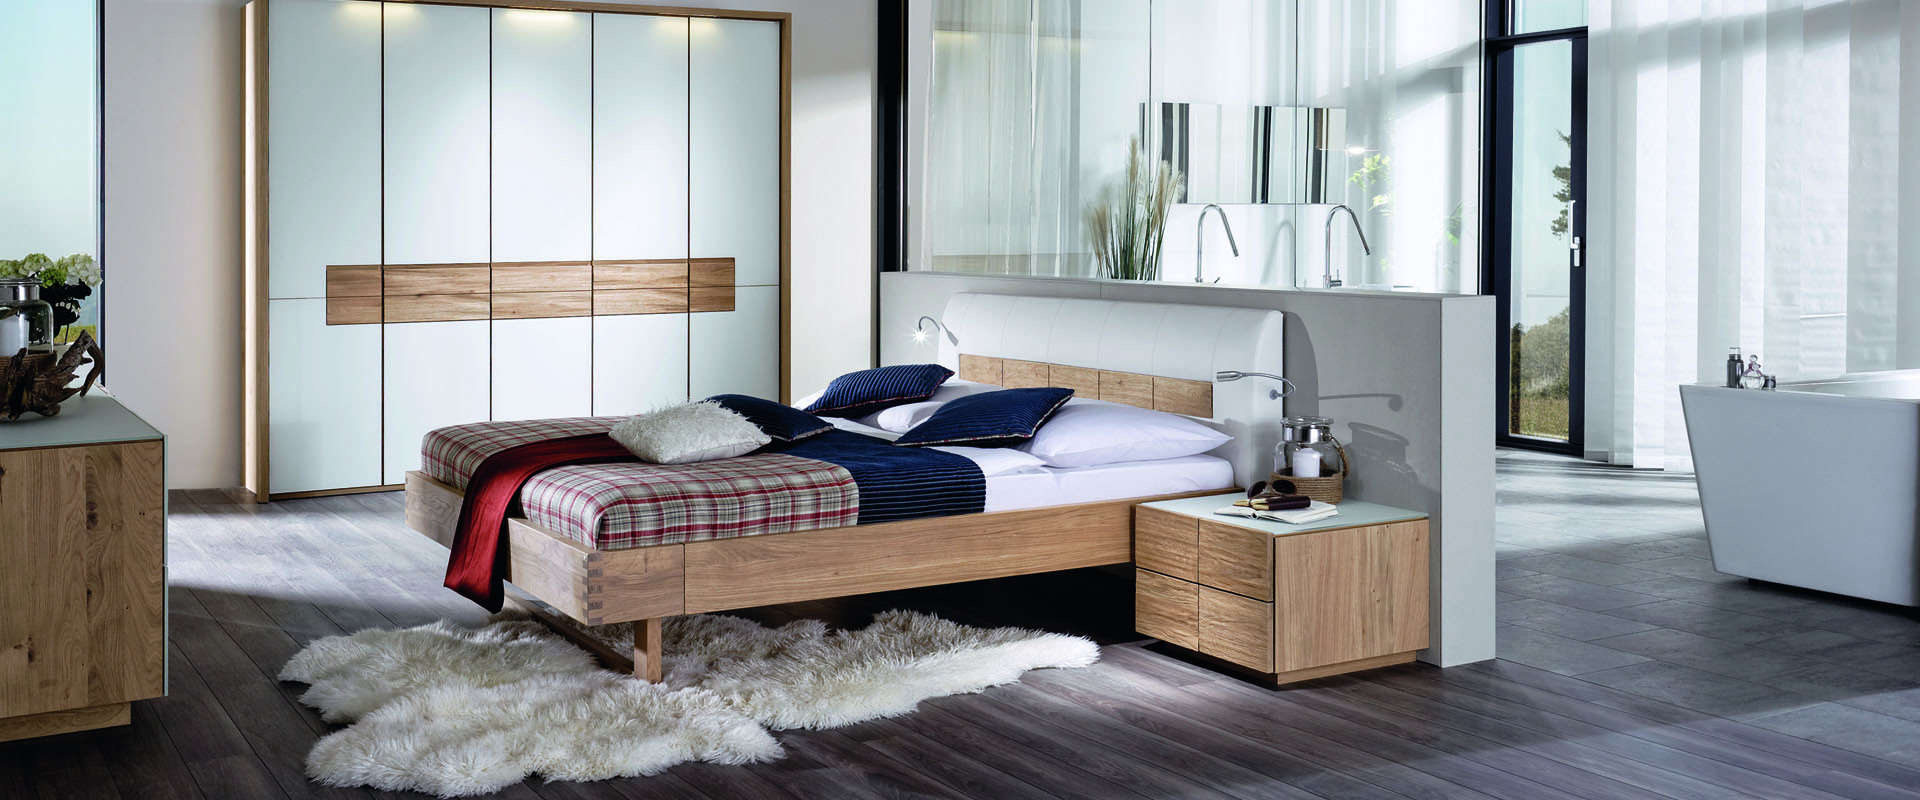 Designer oak bedroom furniture